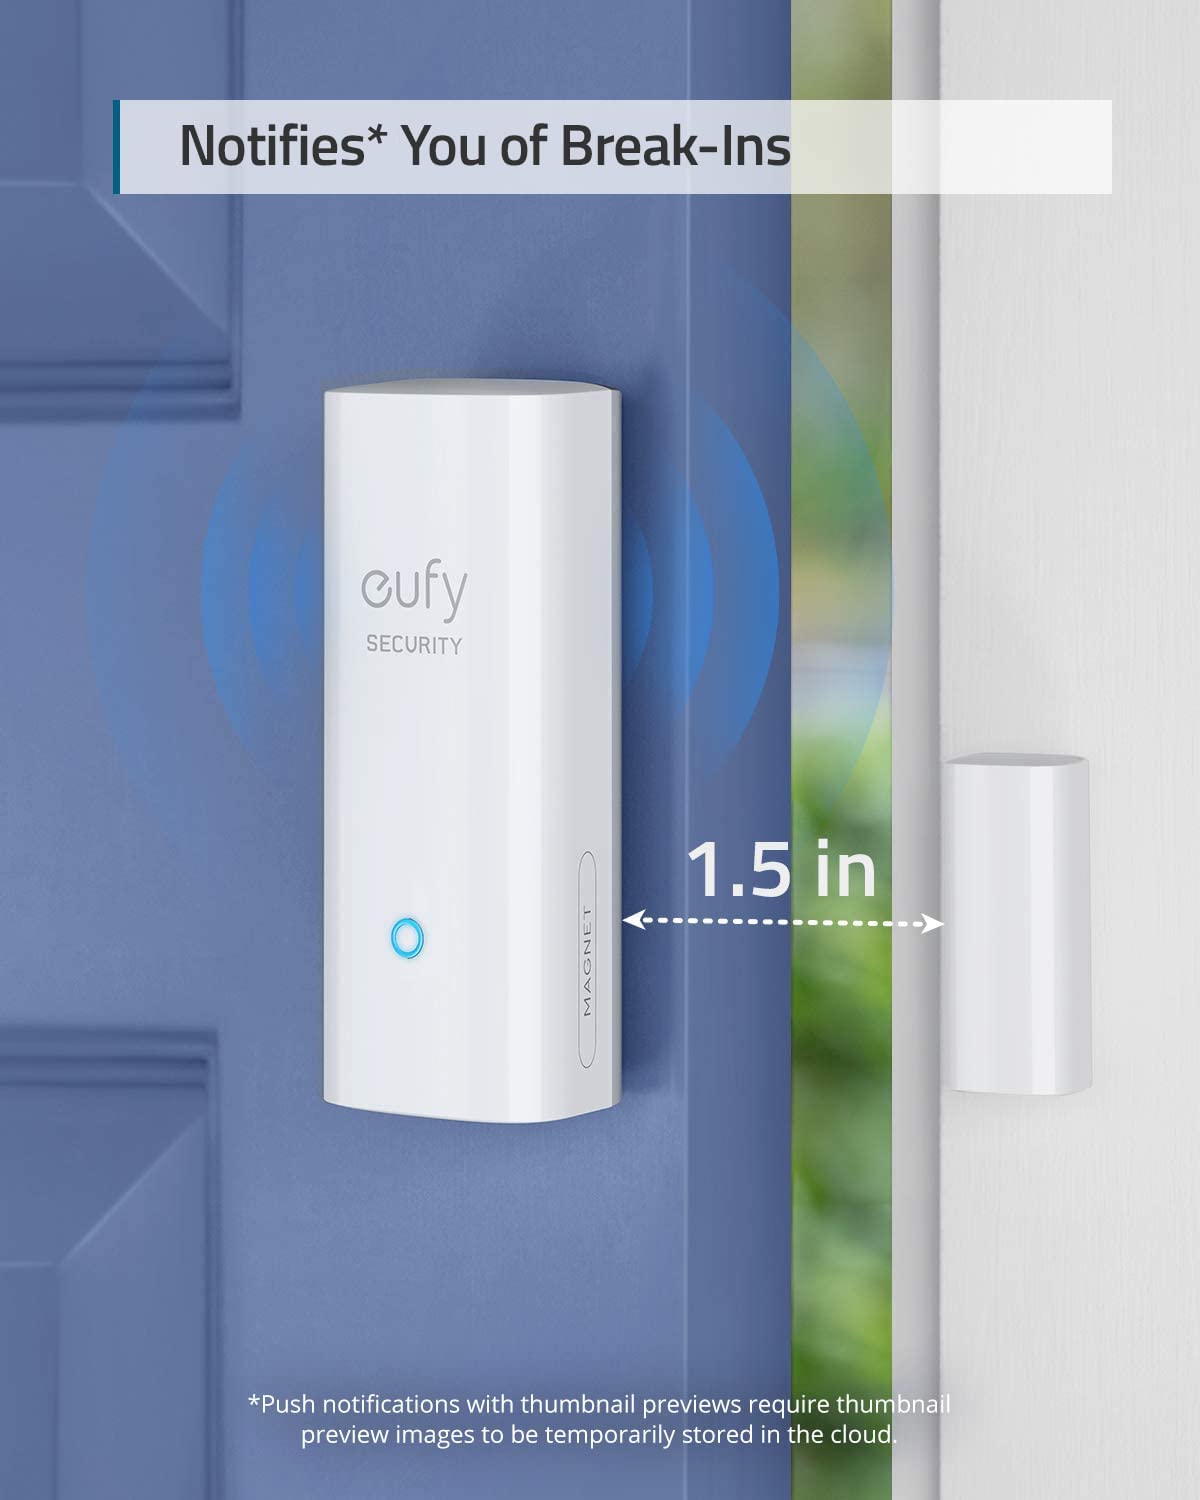 سنسور ورودی امنیتی مدل eufy Security Entry Sensor - ارسال ۱۰ الی ۱۵ روز کاری